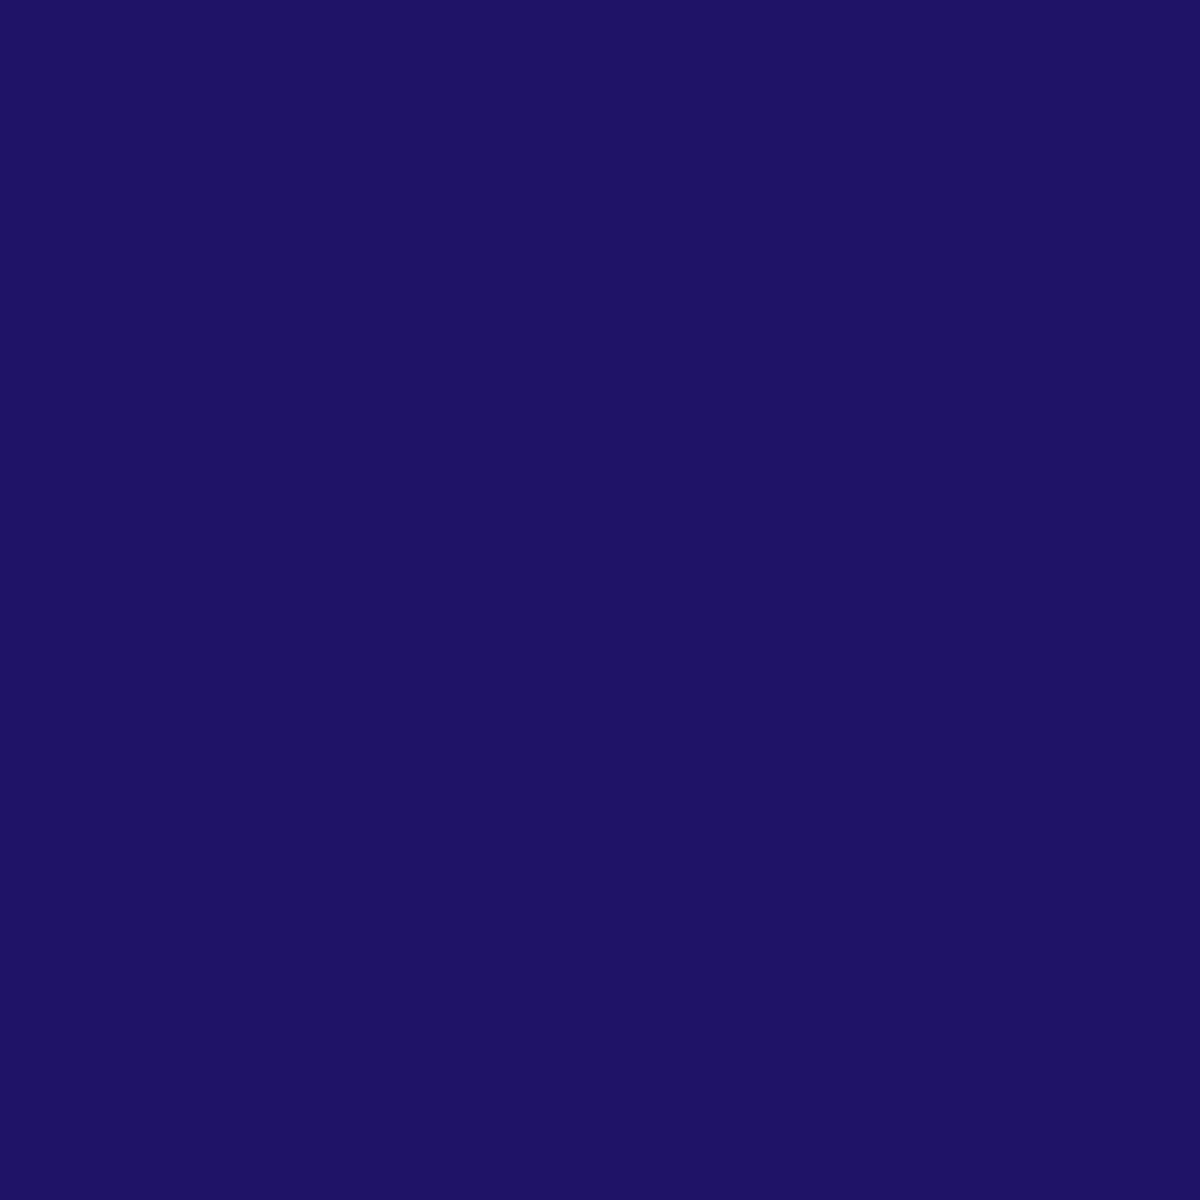 3M Scotchcal Translucent Color Film 3630-87 Royal Blue 1.22m x 45.7m